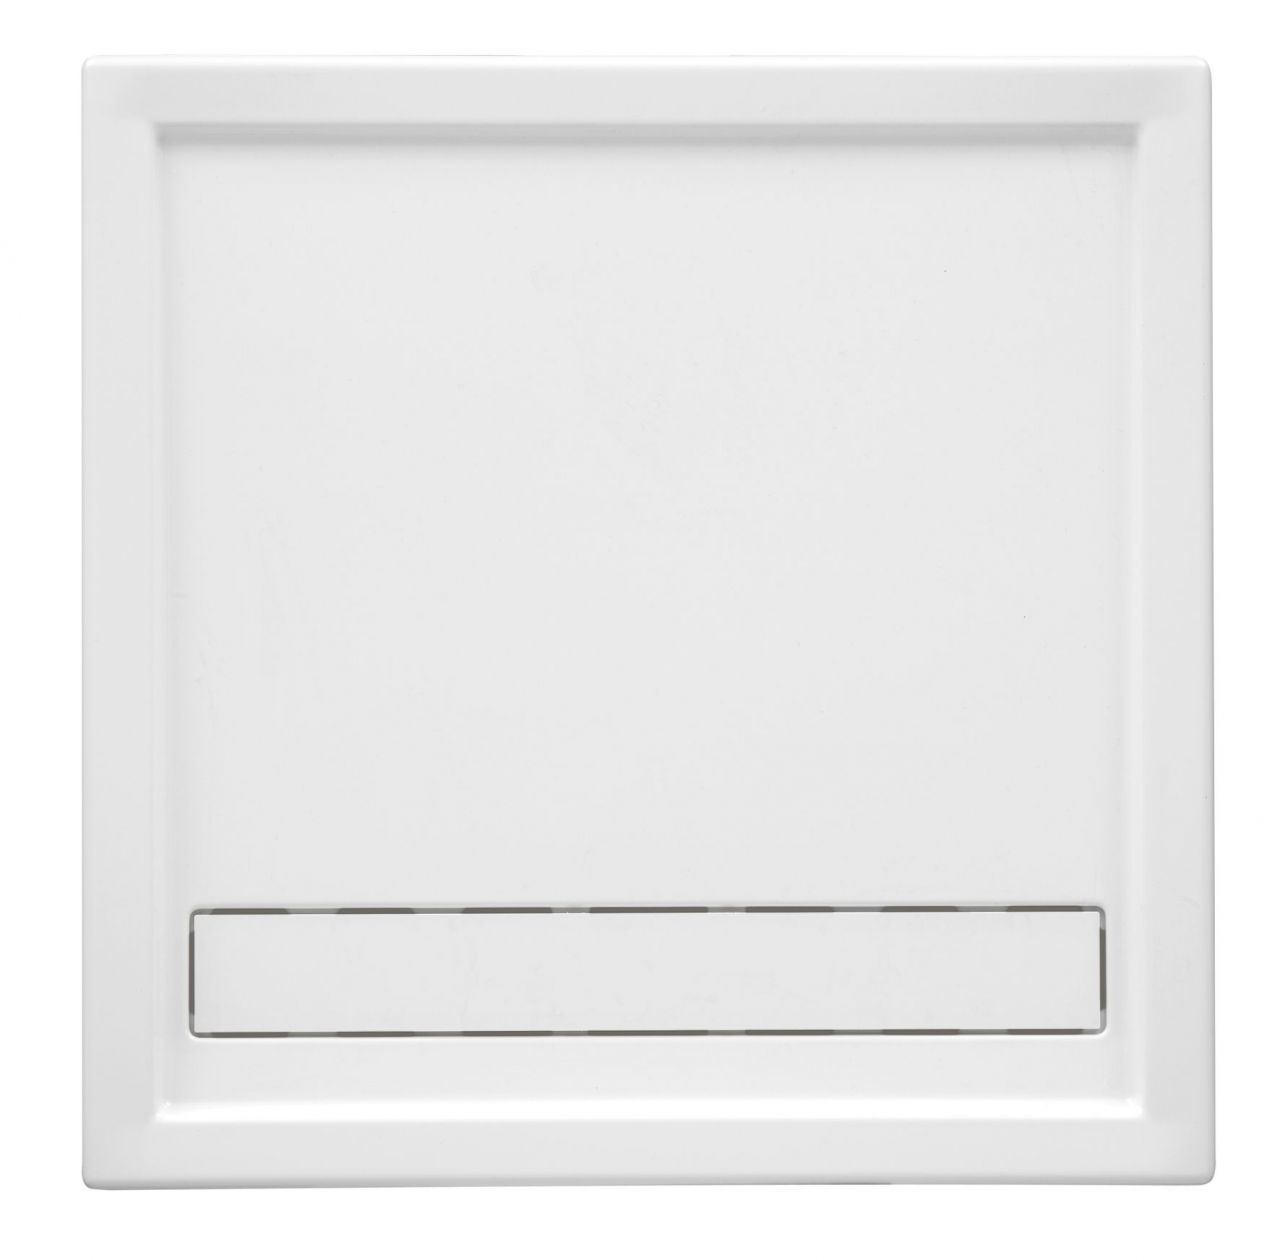 Ottofond Duschwanne Fashion Board 80 x 120 x 3 cm, weiß